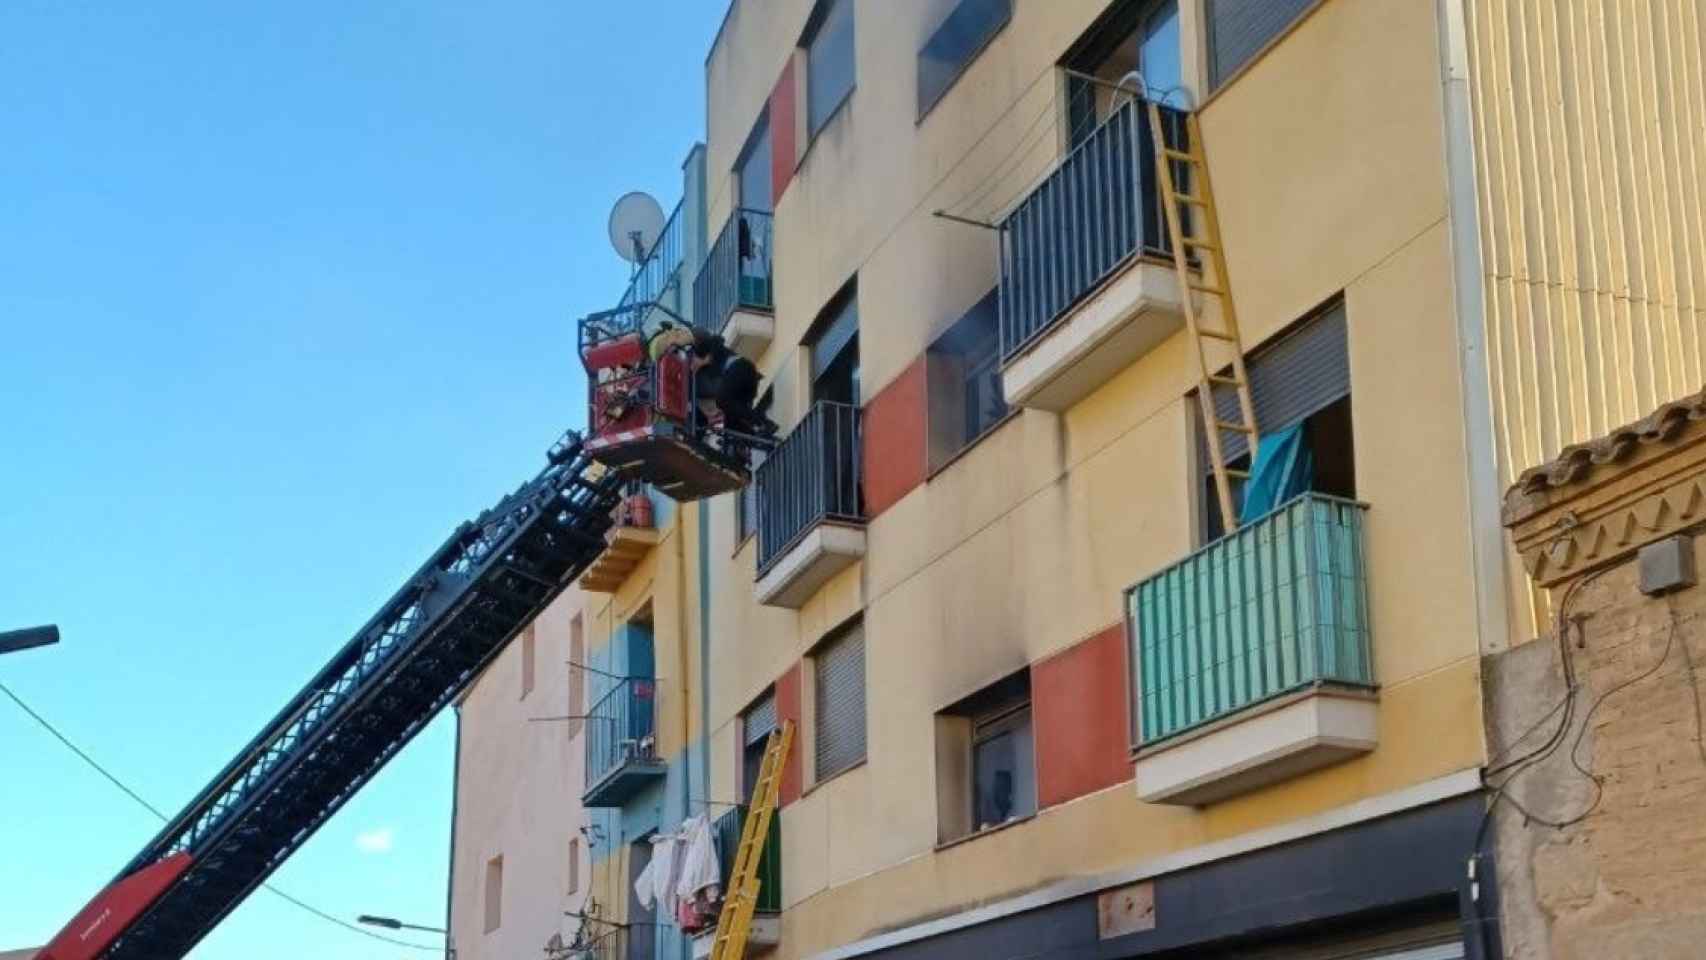 Los bomberos trabajan en un incendio en un edificio de Lleida / EP